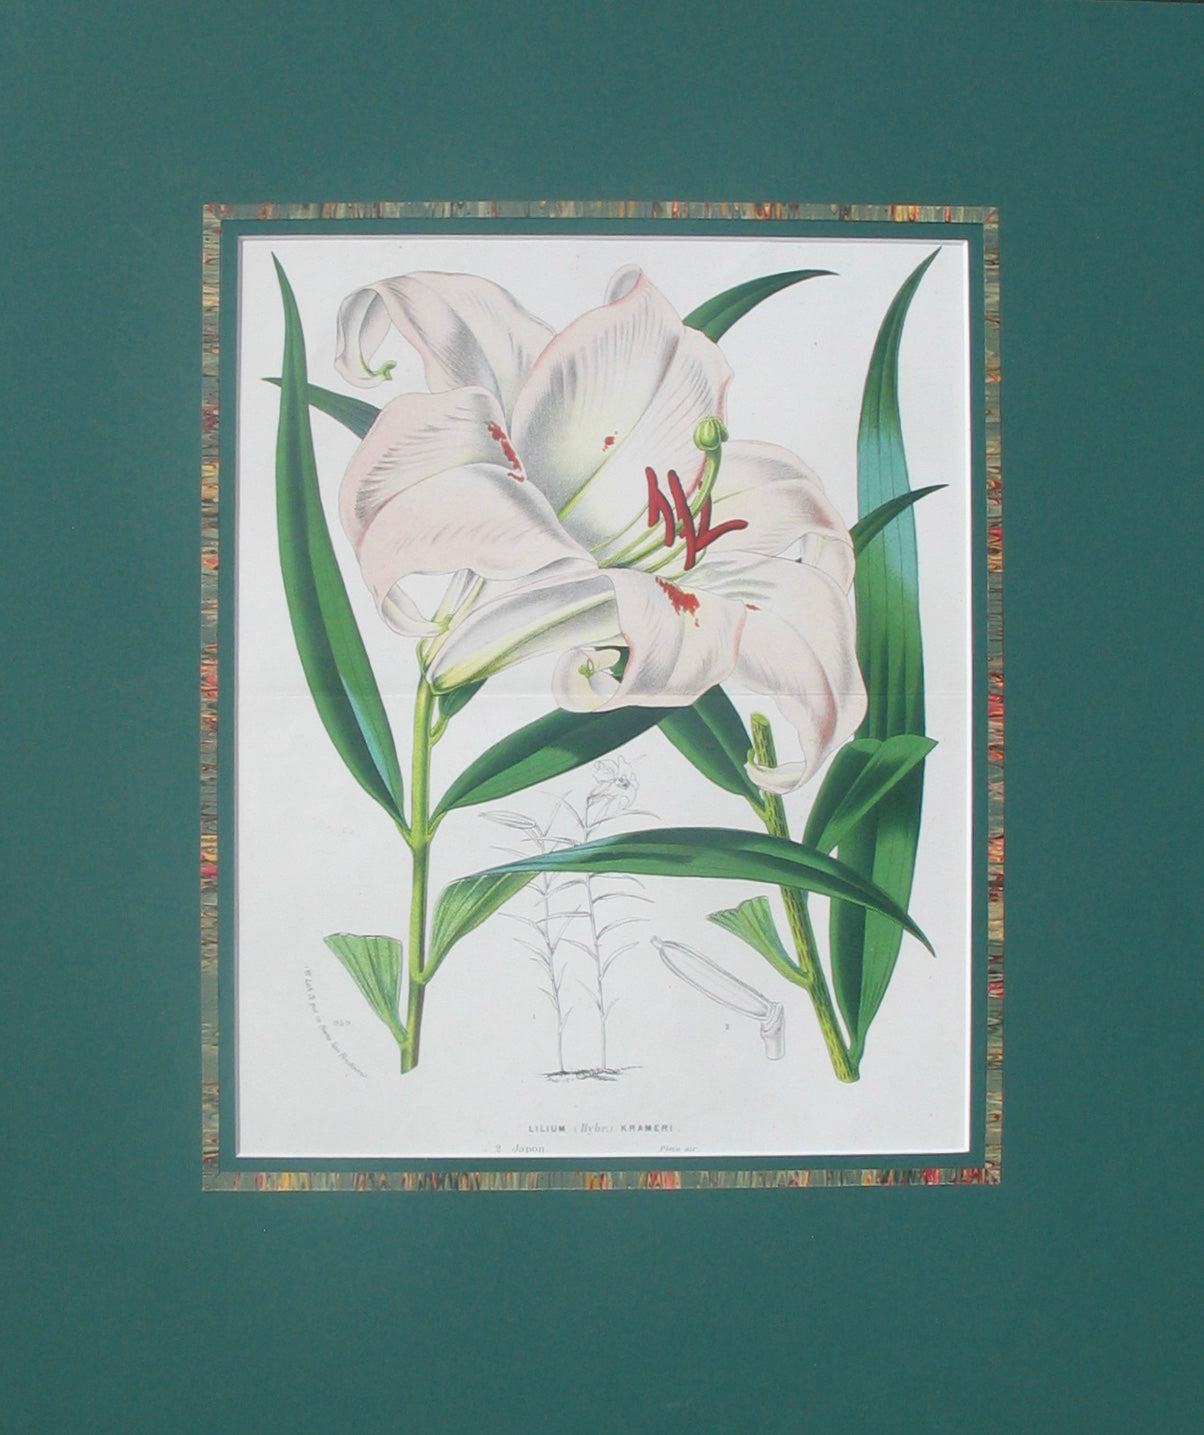 Lilium Krameri (bamboo lily)